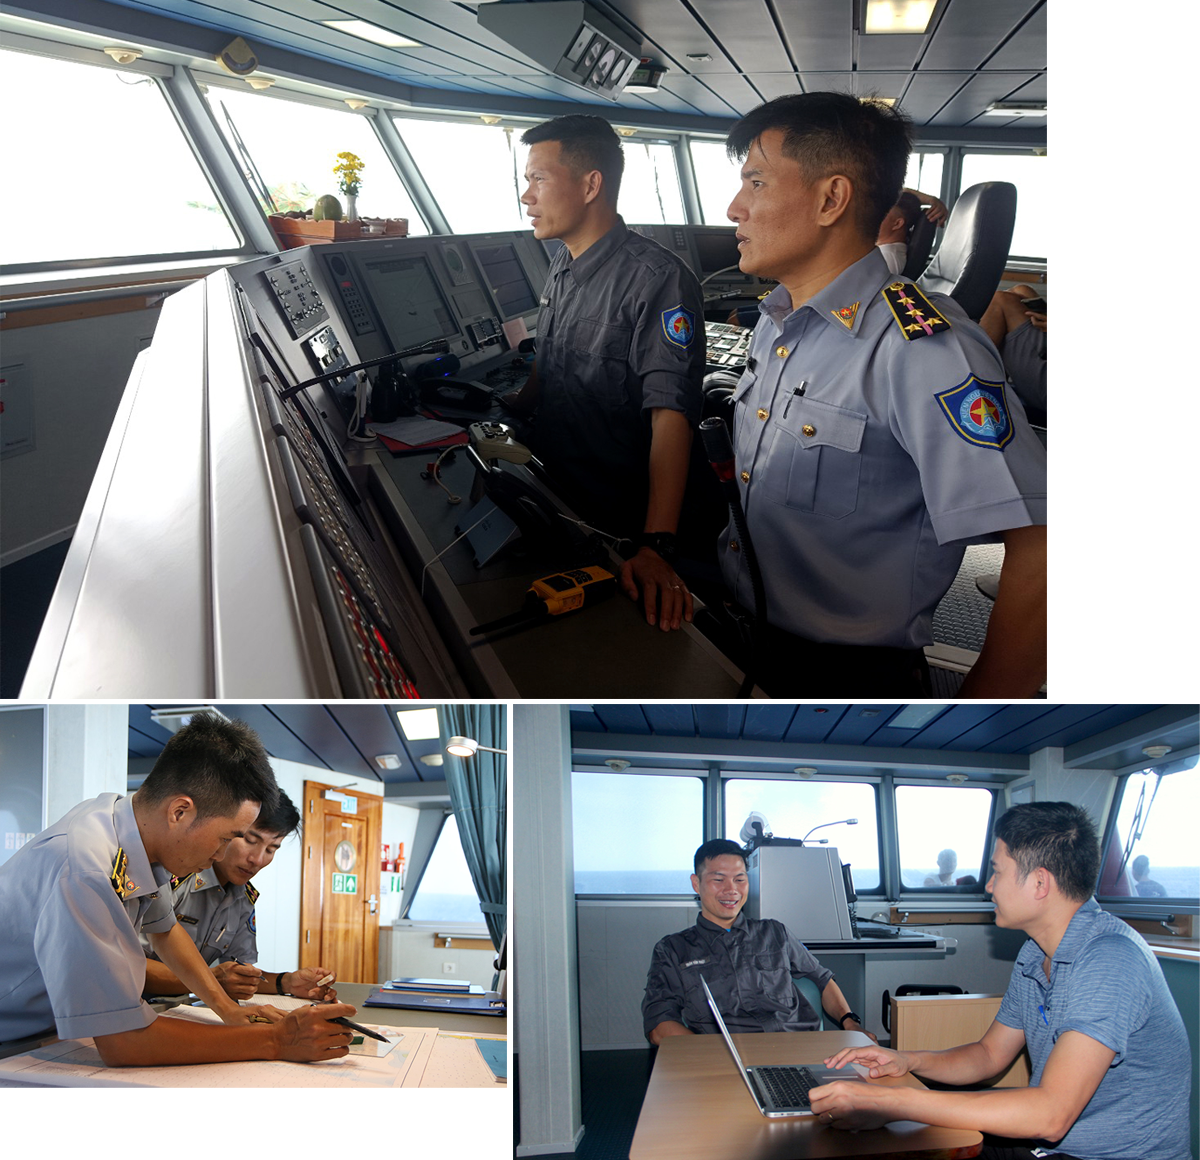 Đoàn thủy thủ trên tàu 490 luôn làm việc hết công suất để đưa đoàn công tác hoàn thành hải trình; PV Báo Nghệ An trao đổi với Đại úy Trần Văn Nhật - Thuyền trưởng tàu 490.